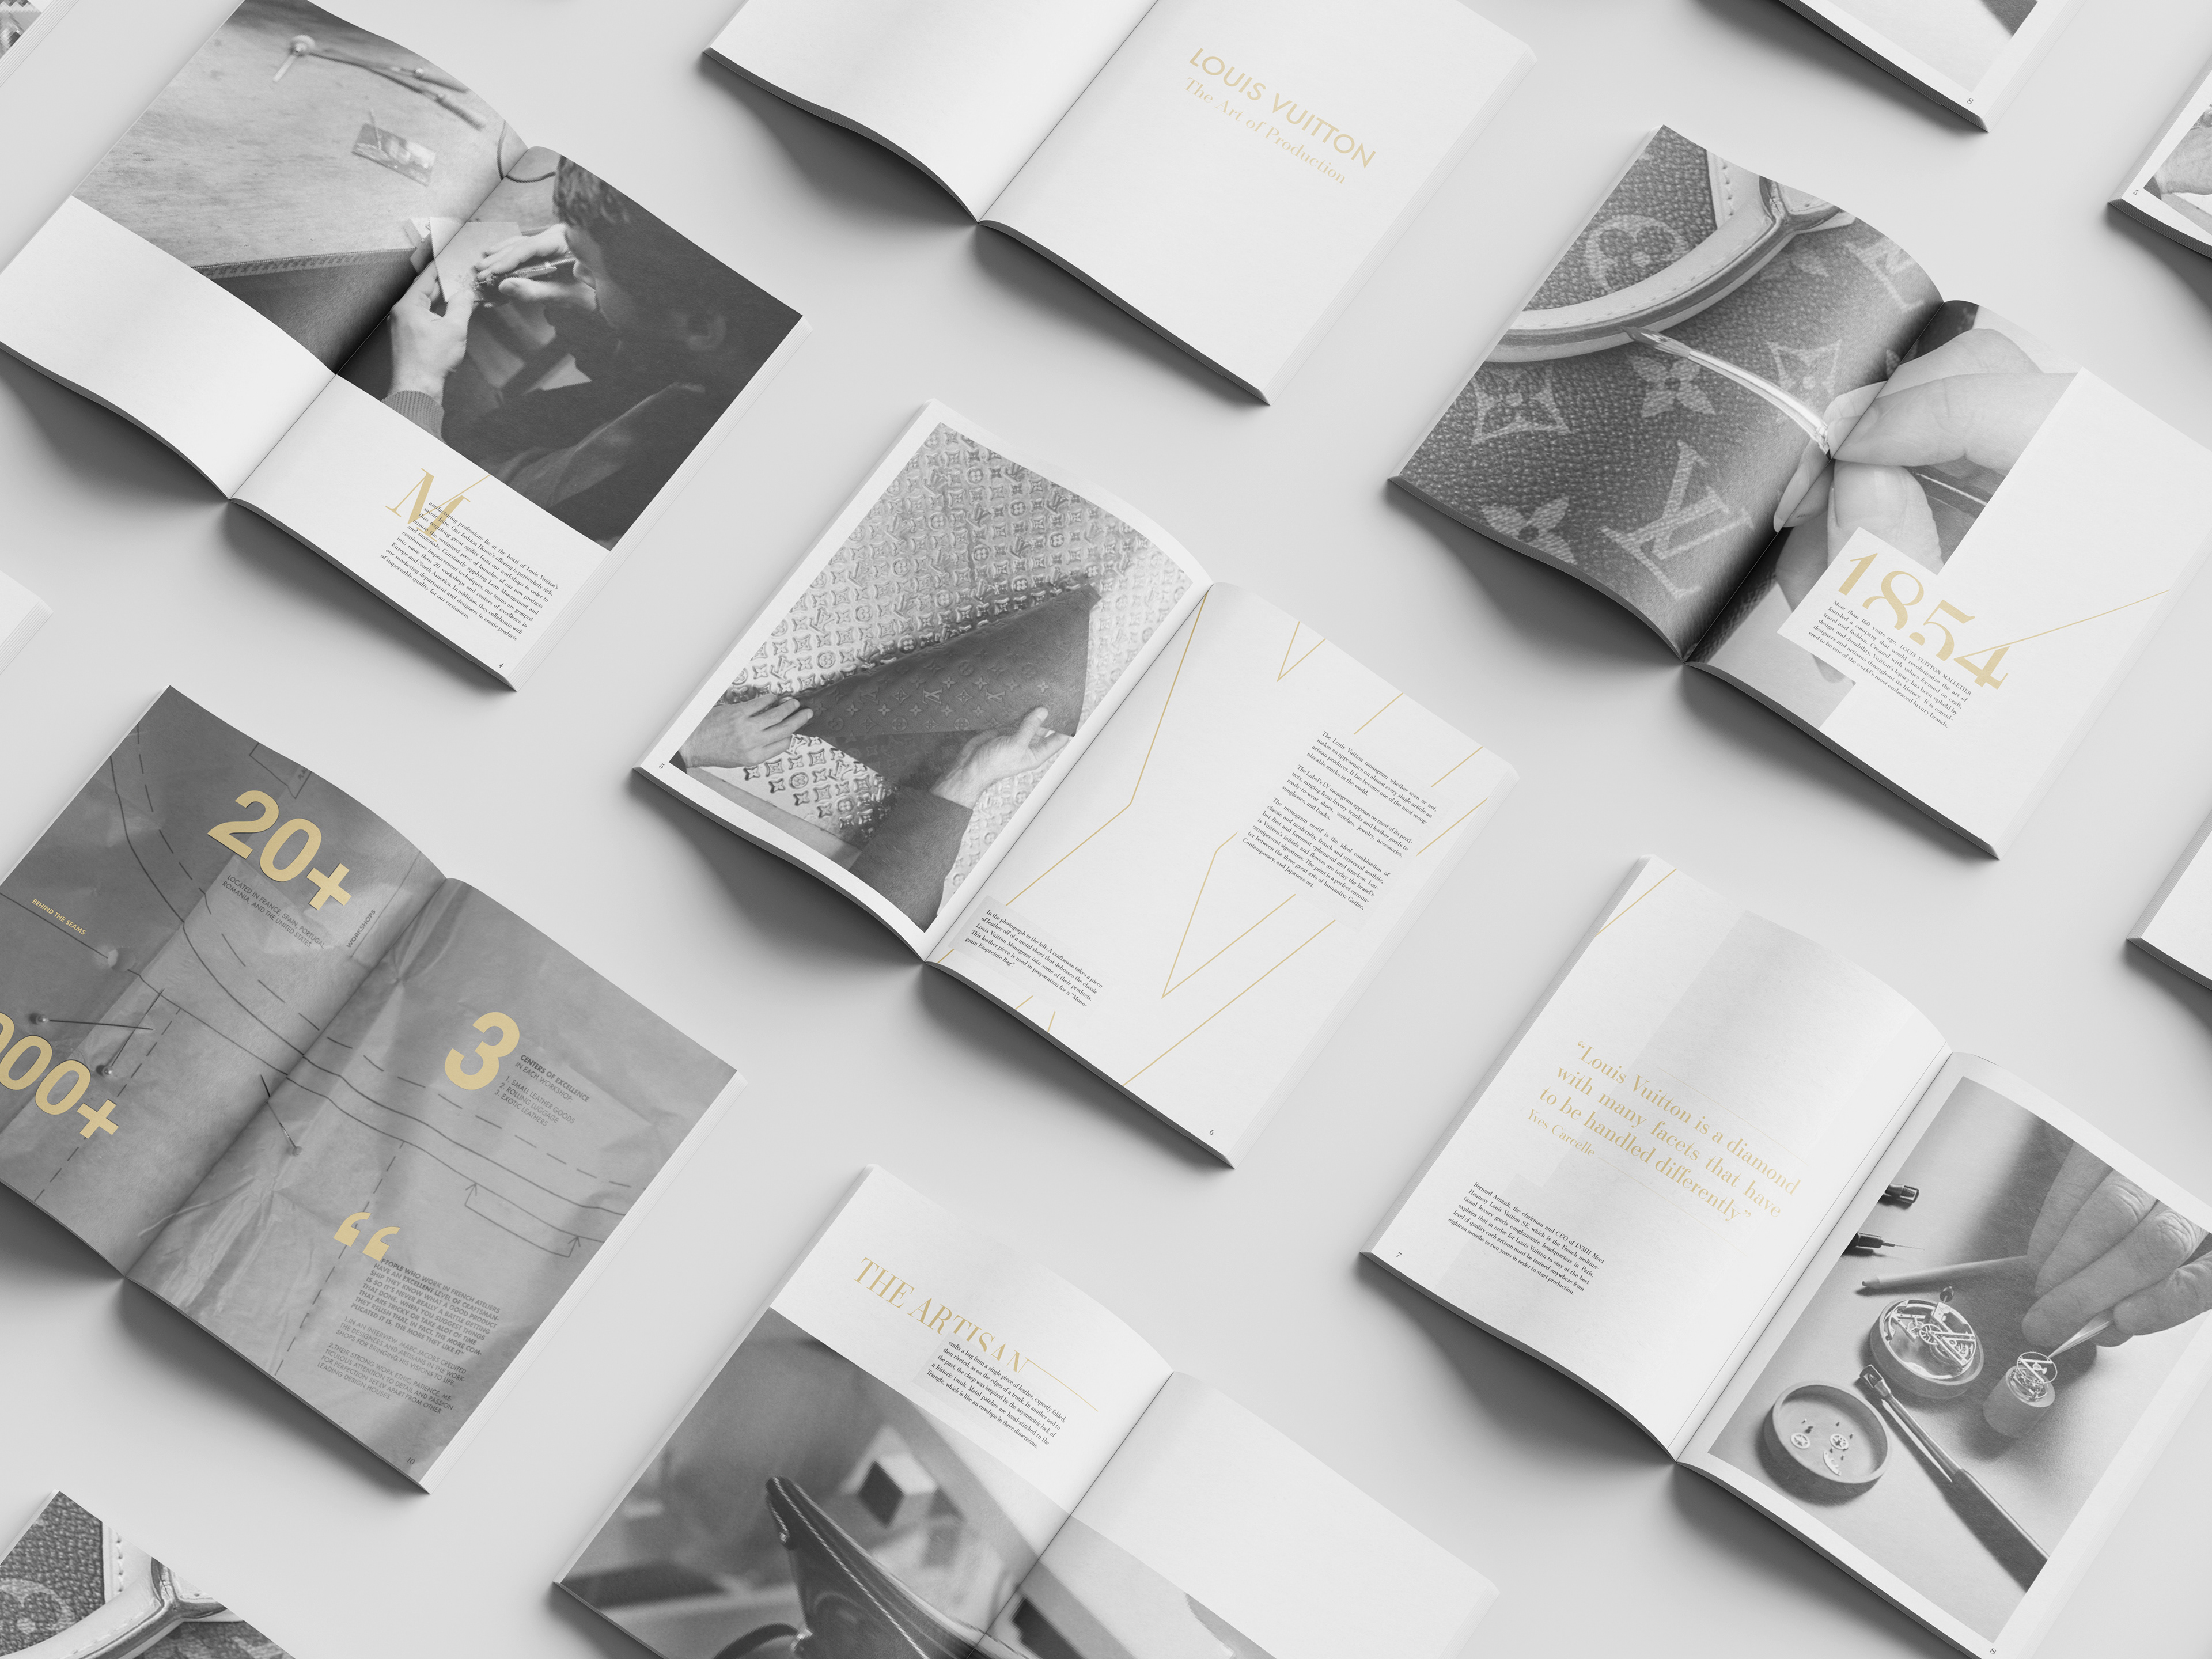 Avalon Arauzo - Louis Vuitton Brand Book